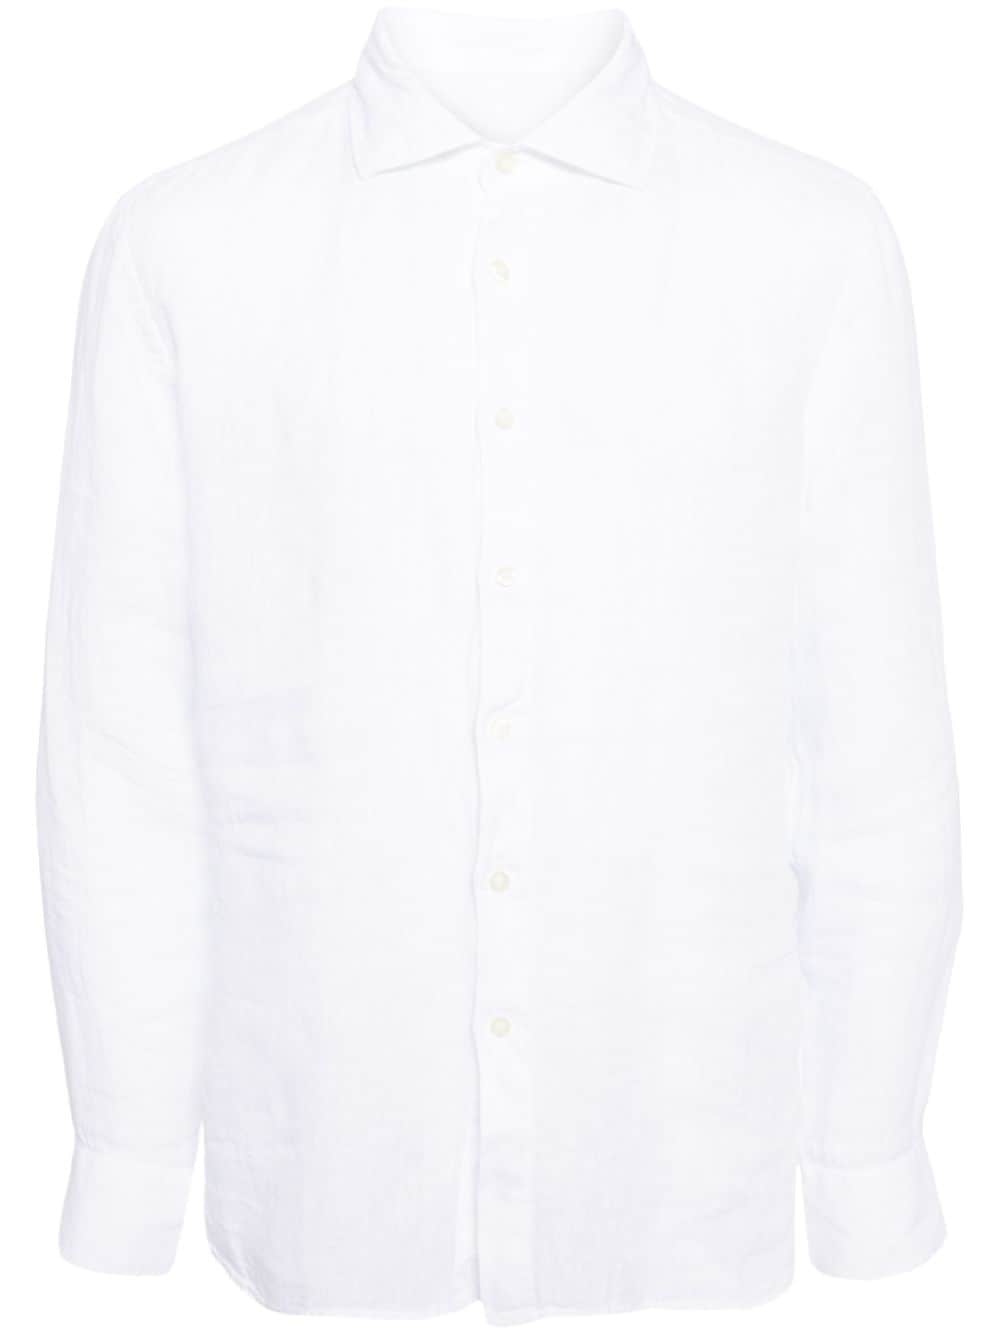 long-sleeved linen shirt